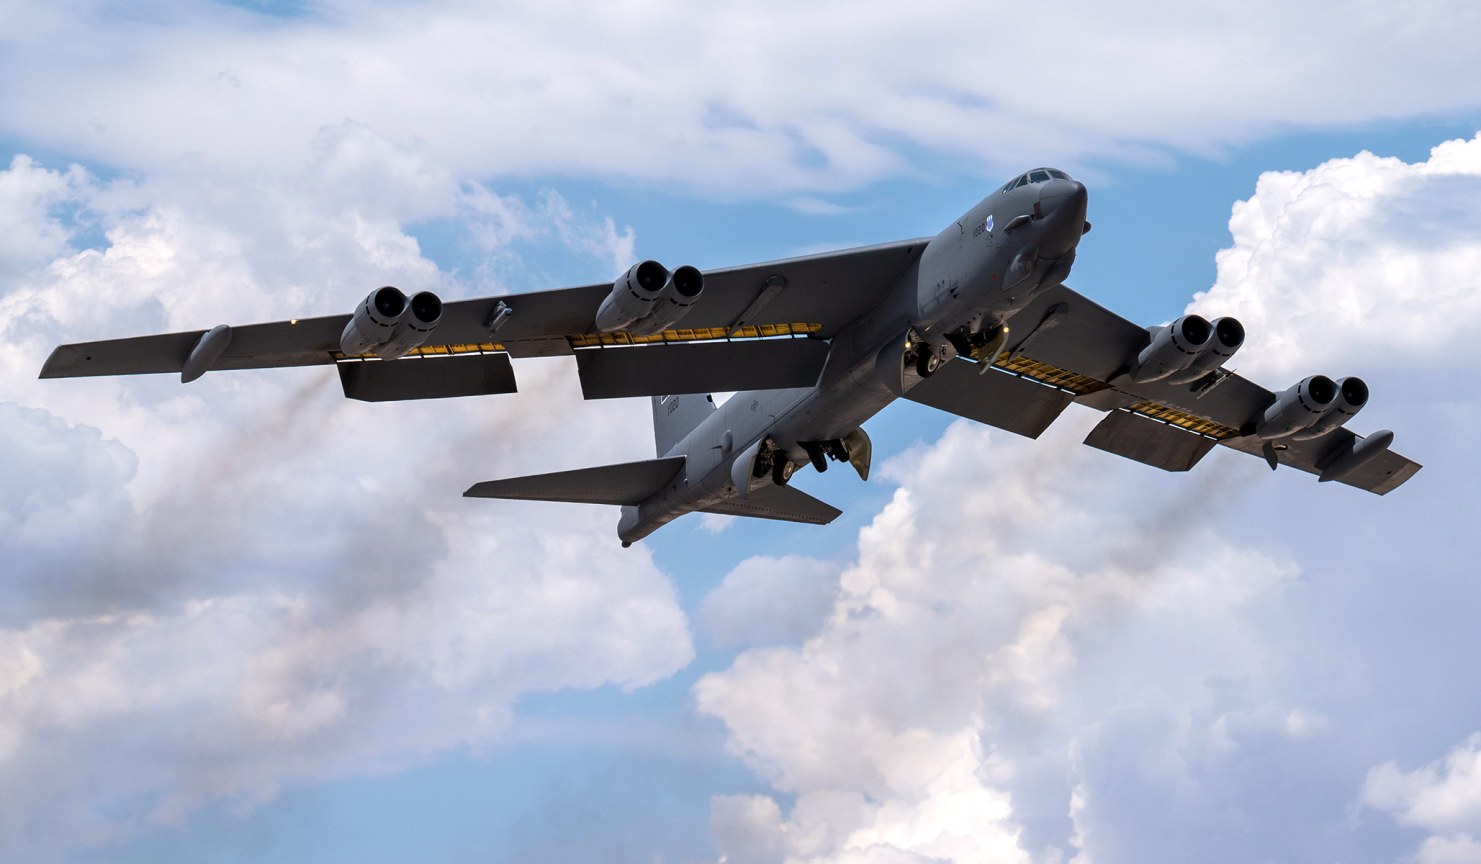 L'US Air Force spenderà 11 miliardi di dollari per aggiornare il B-52H: il bombardiere avrà un motore F130, un radar e potrà trasportare un nuovo missile nucleare con una gittata di 2.400 km.